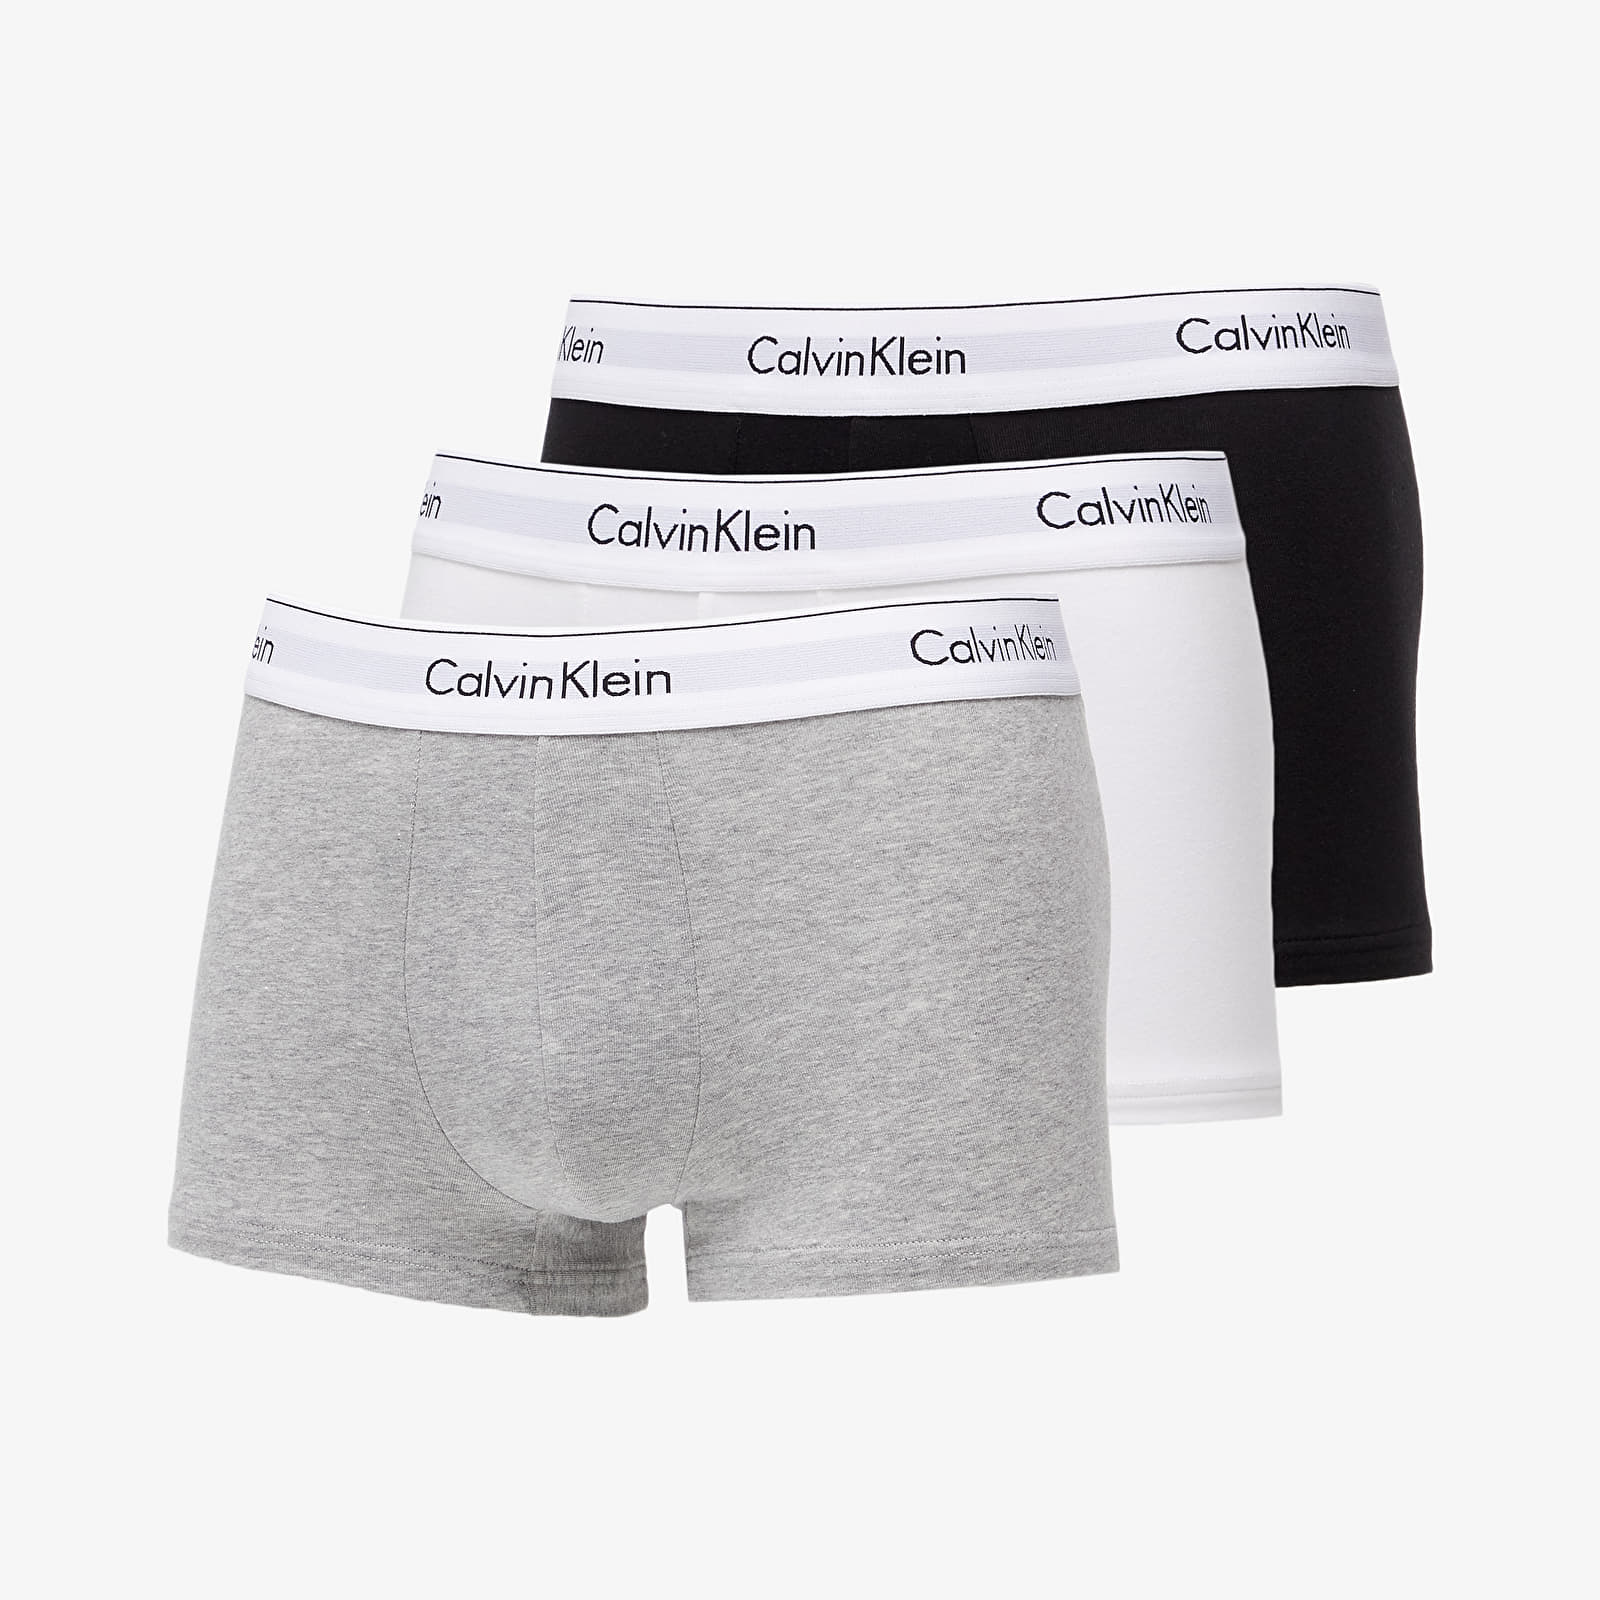 Trunchiuri Calvin Klein Modern Cotton Stretch Trunk 3-Pack Black/ White/ Grey Heather